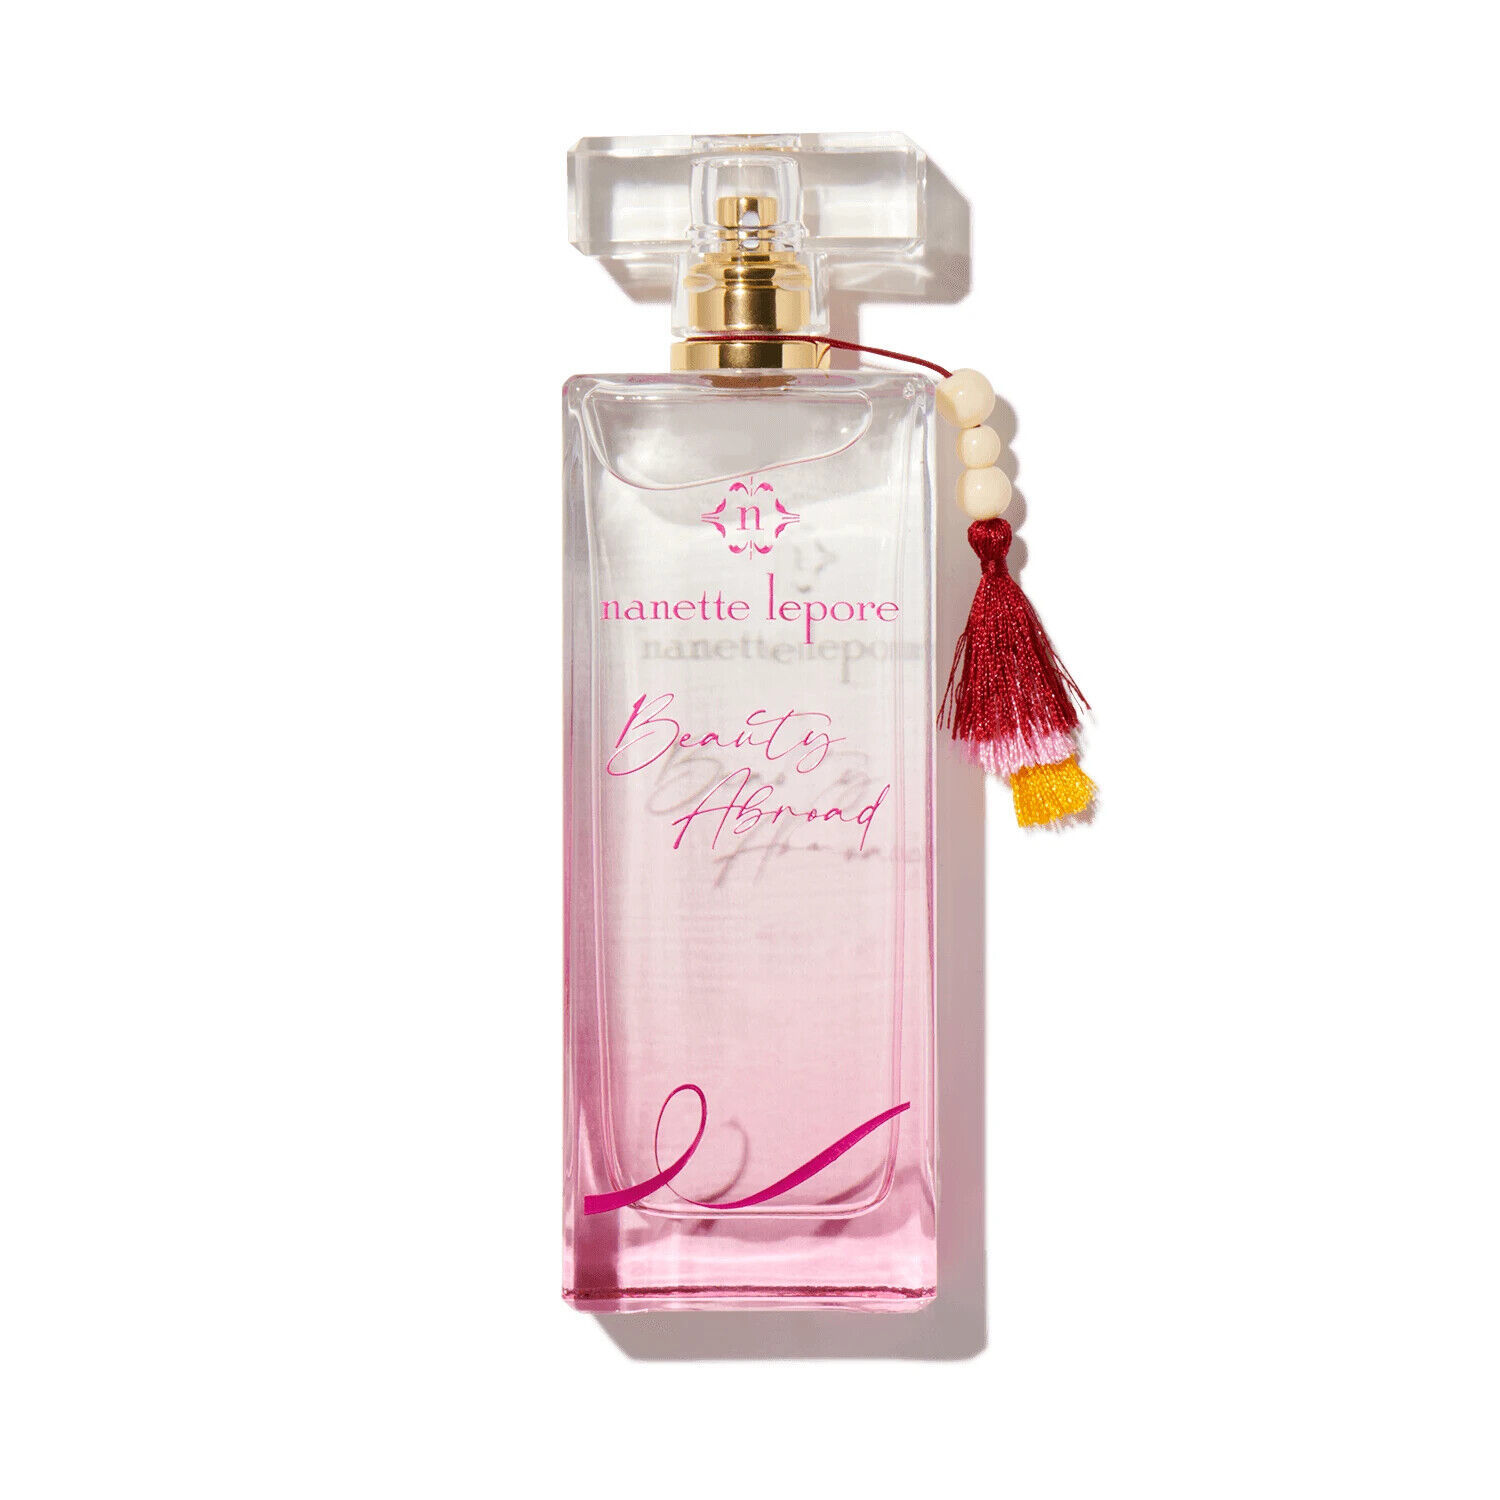 Beauty Abroad by Nanette Lepore 3.4 oz Eau De Parfum spray unbox for women - $31.36